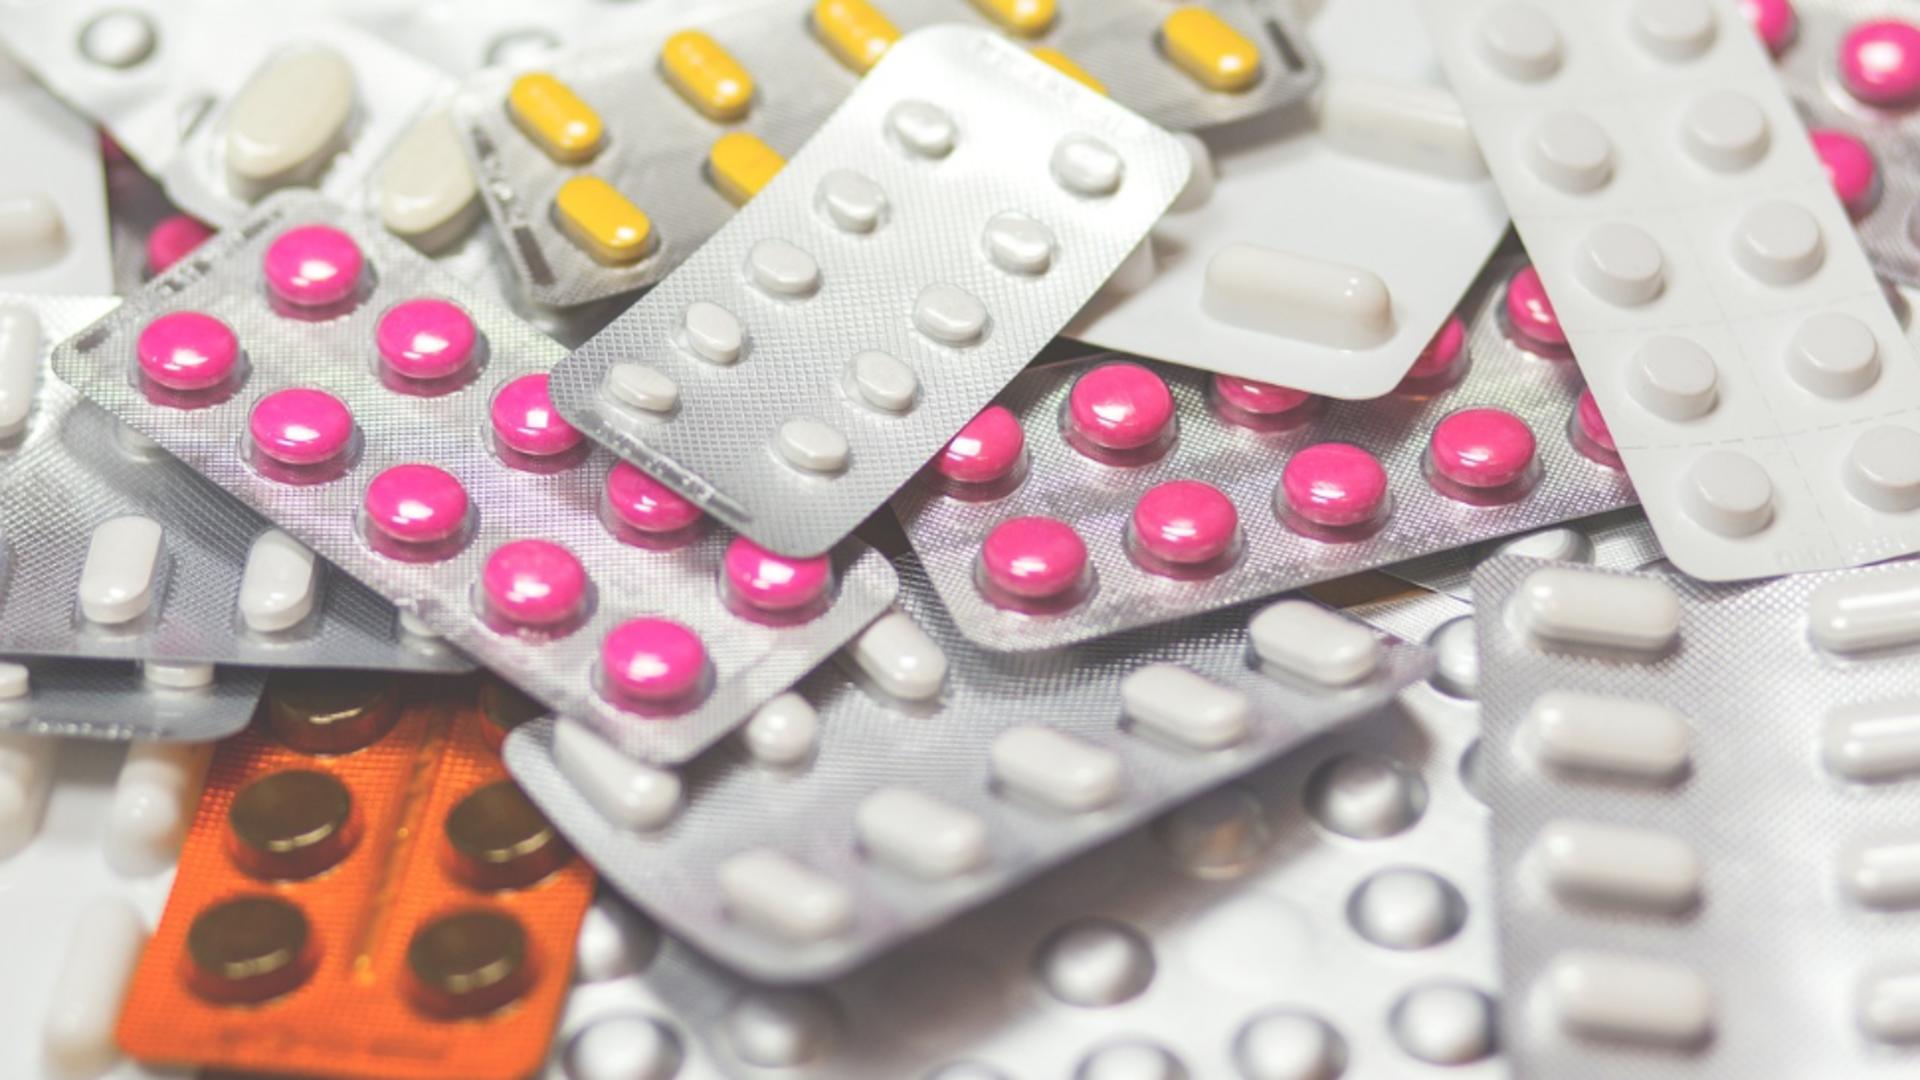 Ministerul Sănătății a extins LISTA medicamentelor compensate şi gratuite cu 28 de taratamente inovative. Pentru ce boli sunt indicate și de când e valabilă măsura